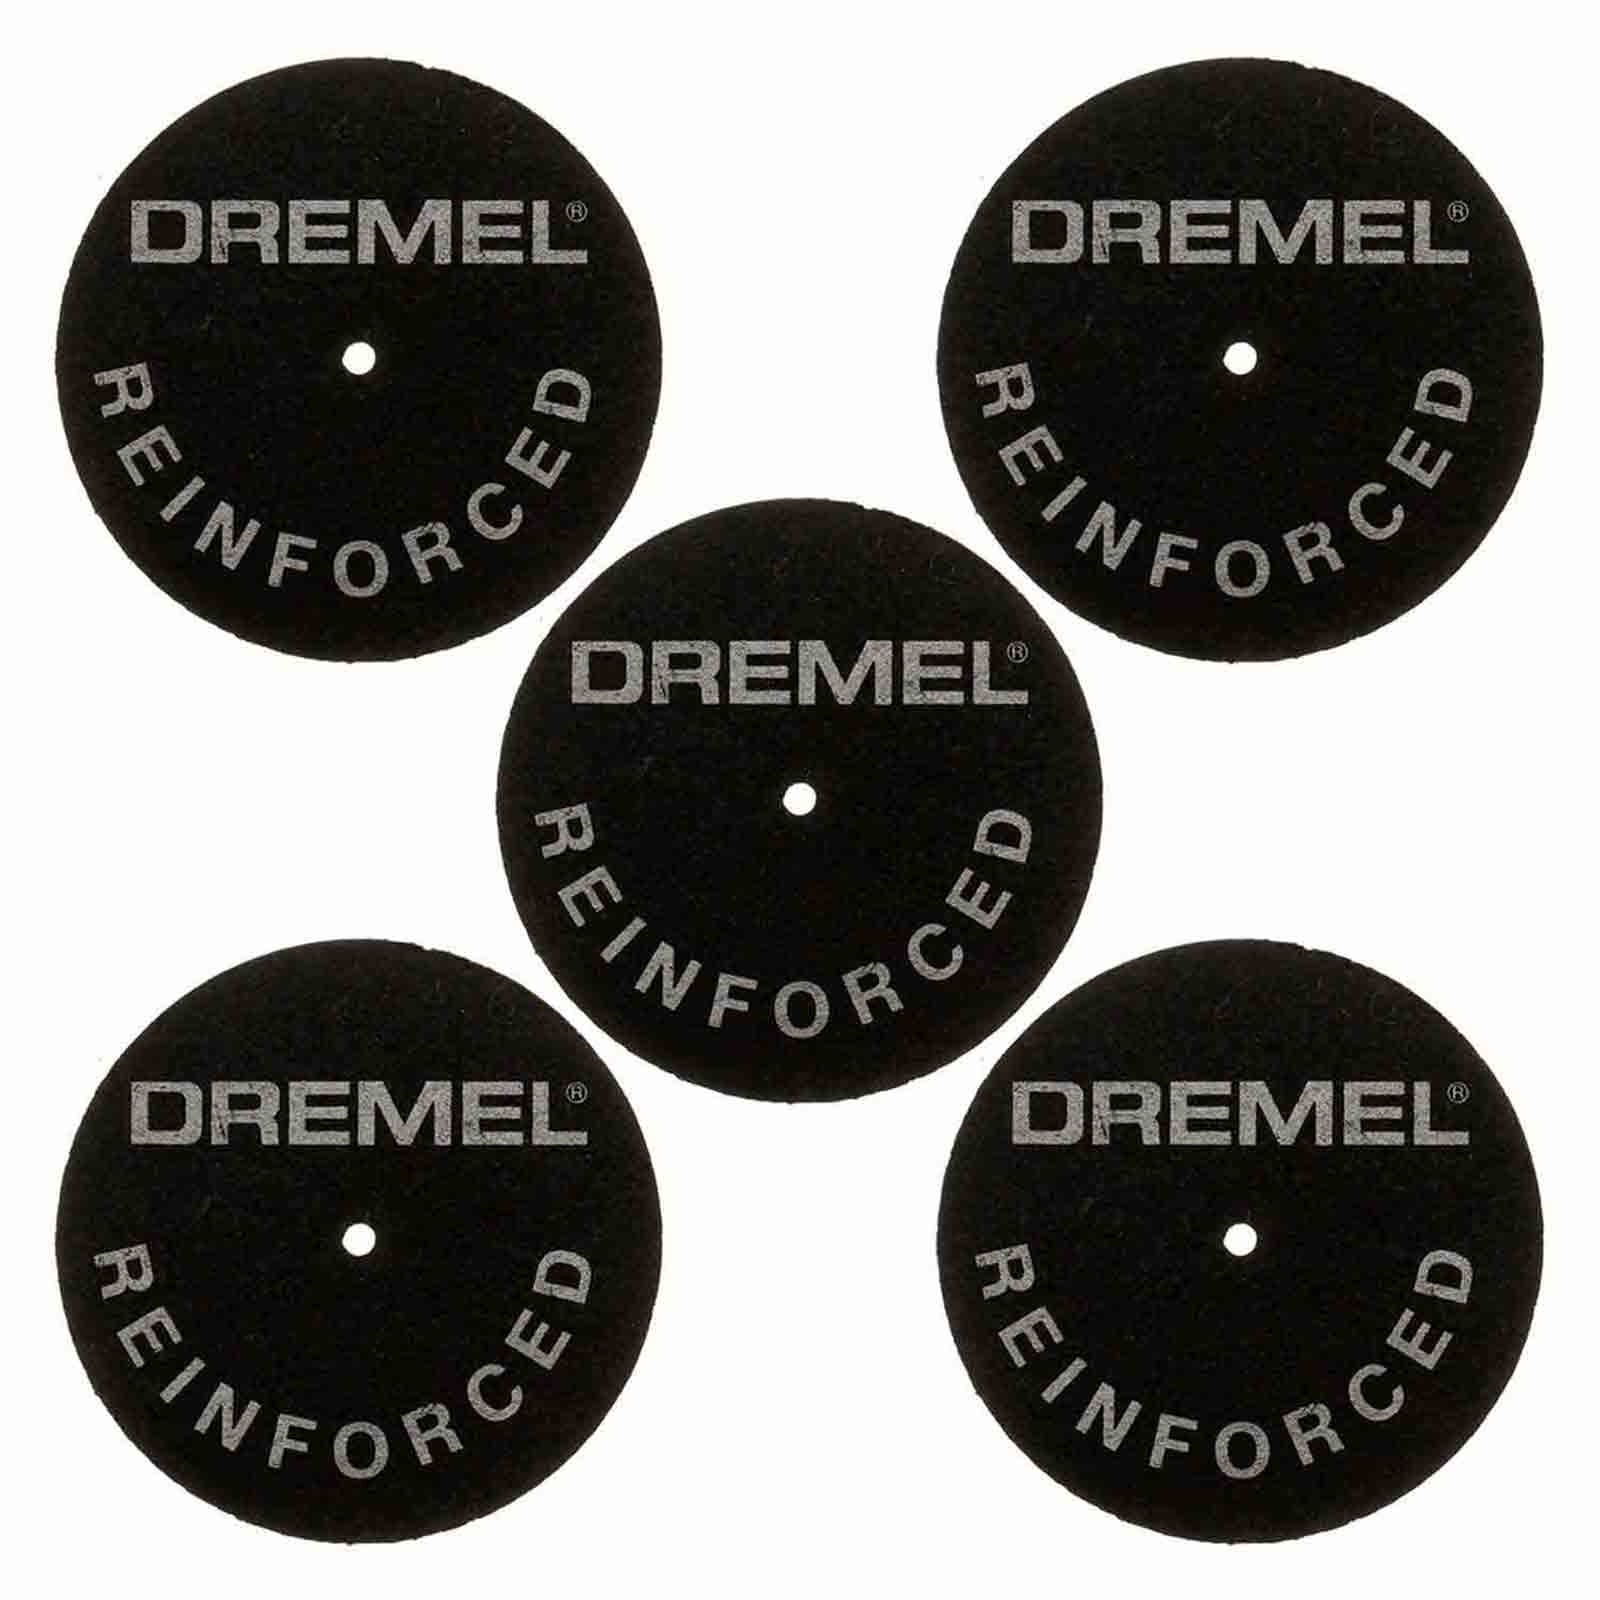 Dremel 426 Reinforced Cut-Off Wheels - 5pc